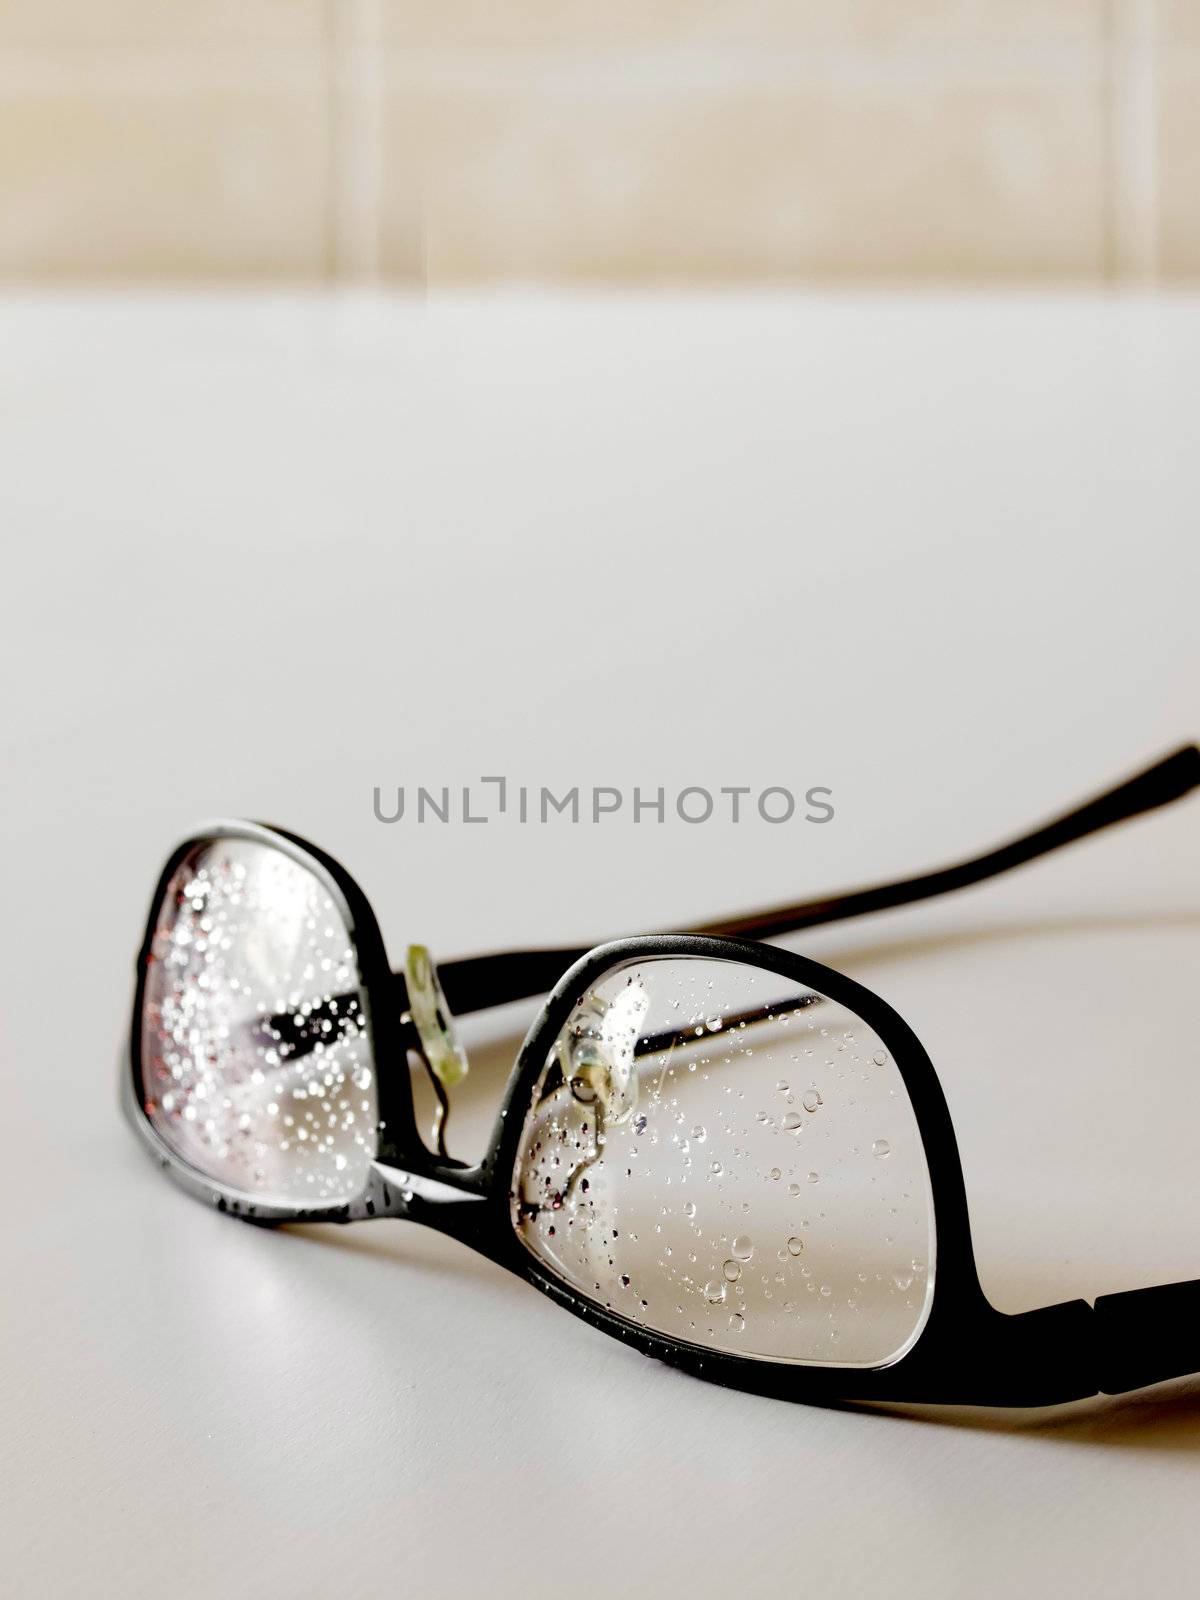 wet eye glasses in bathroom by zkruger